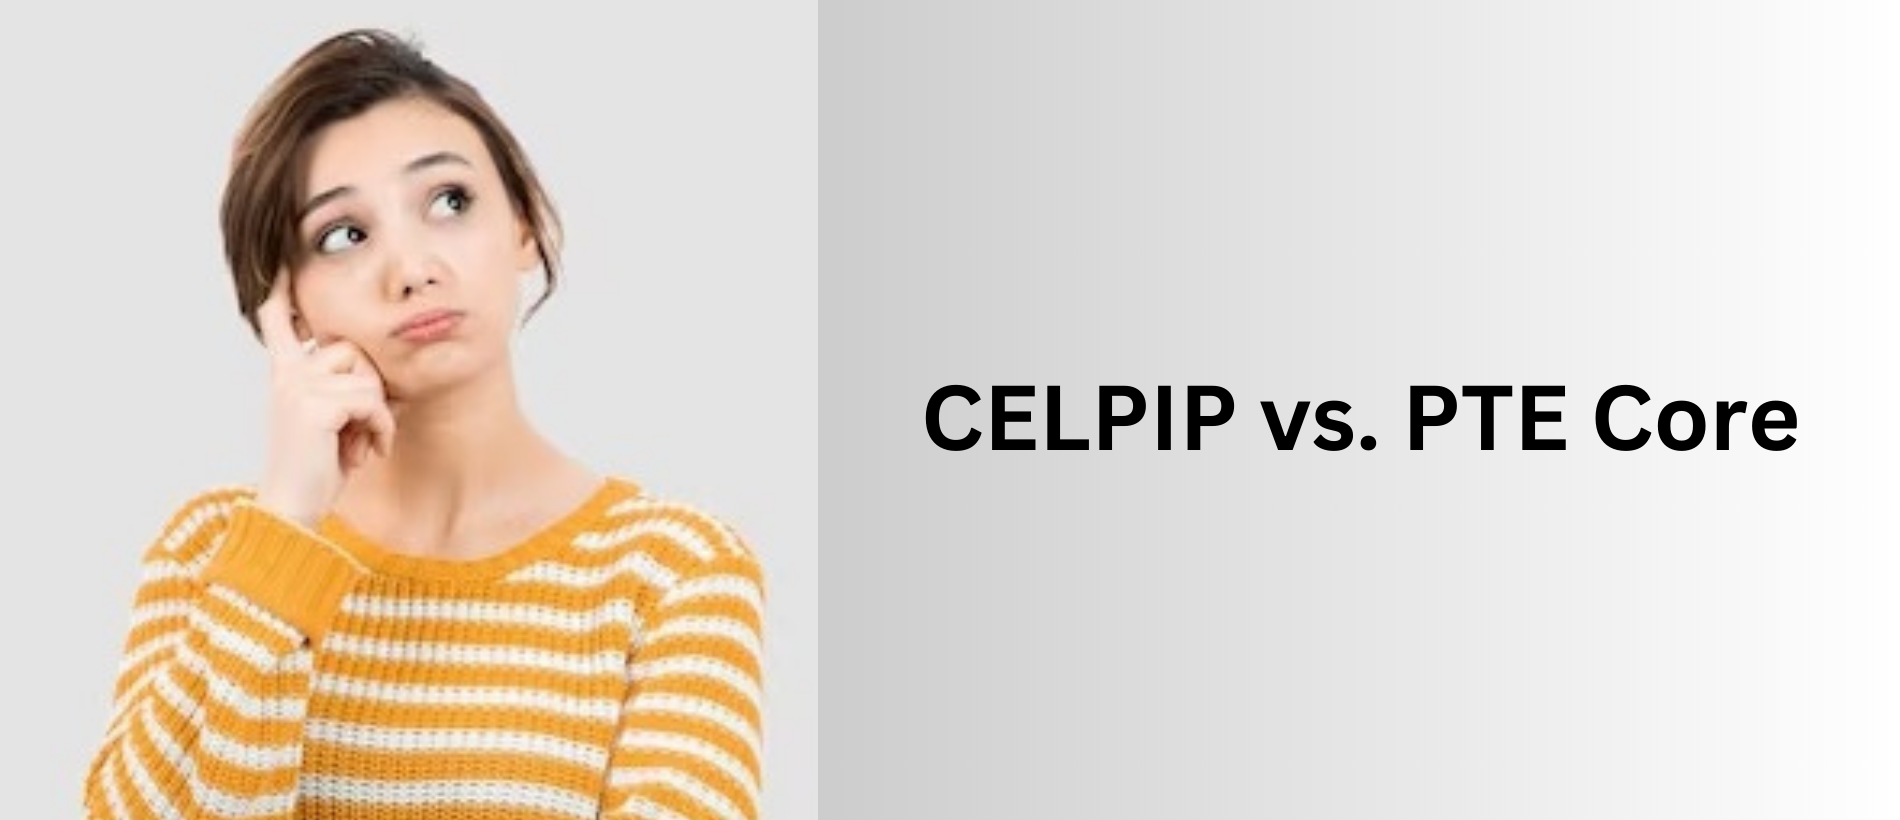 CELPIP vs. PTE Core